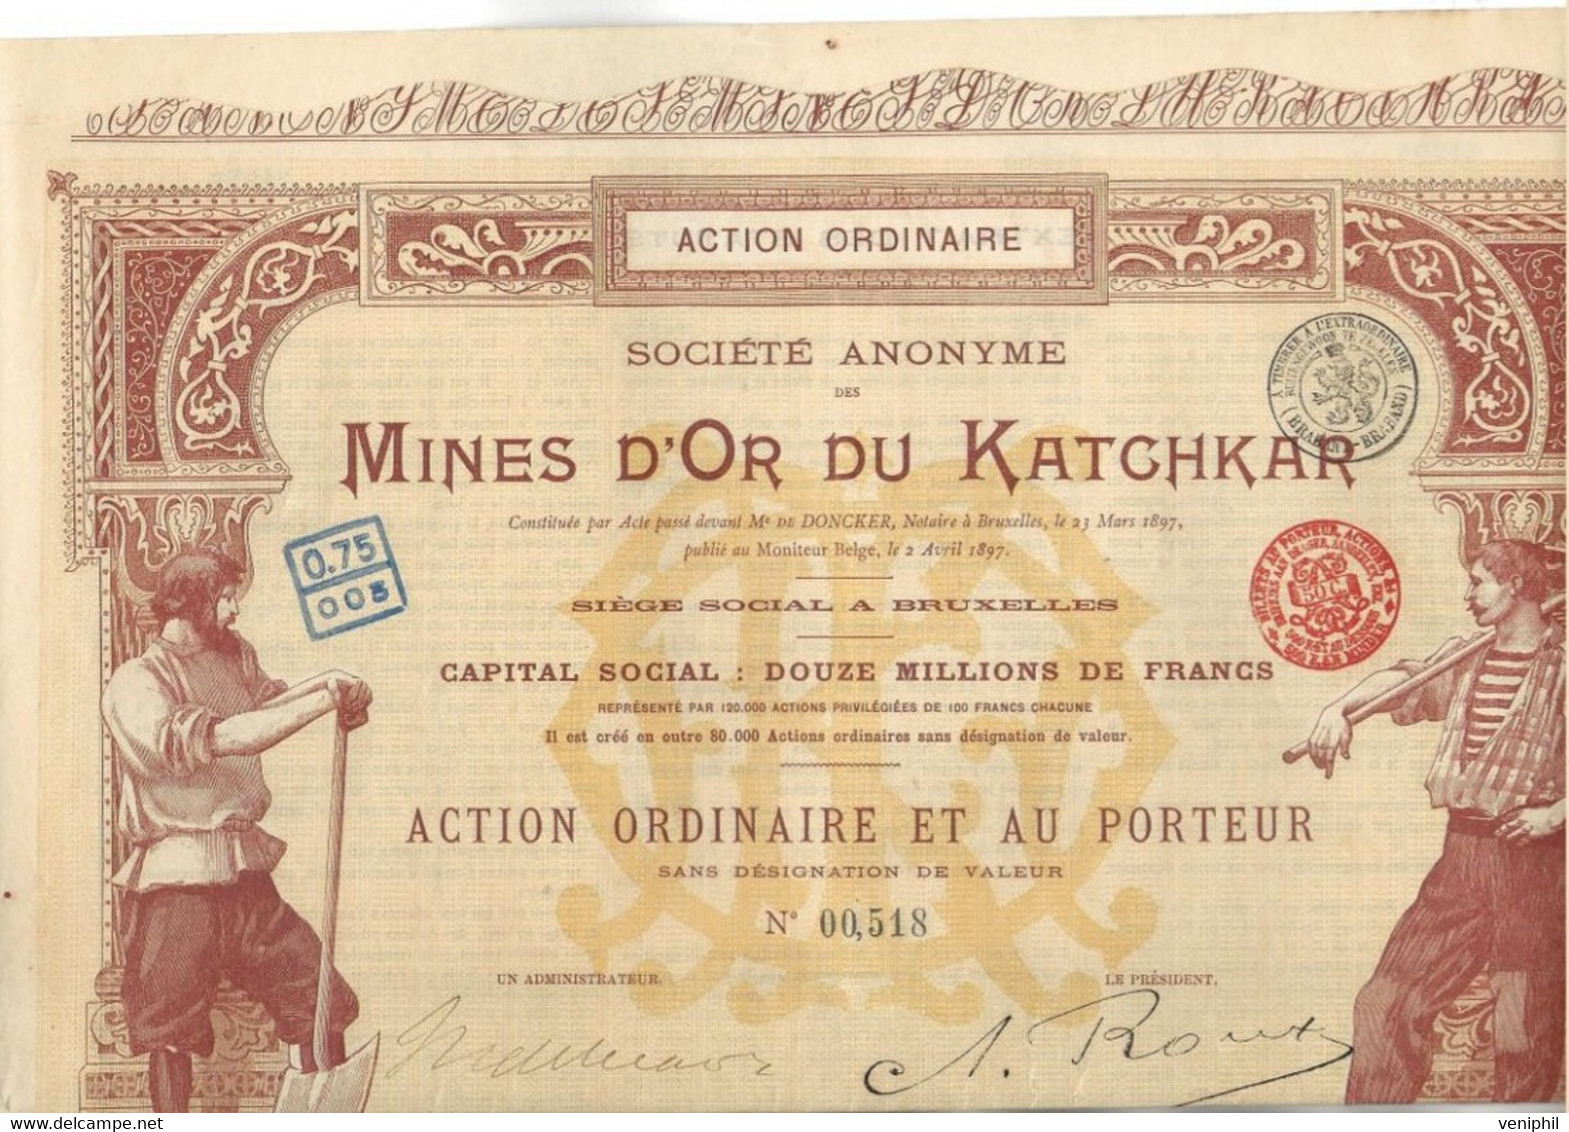 MINES D'OR DU KATCHKAR (ARMENIE RUSSIE ) TITRE DE CINQ ACTIONS ORDINAIRES -ANNEE 1897 - Miniere